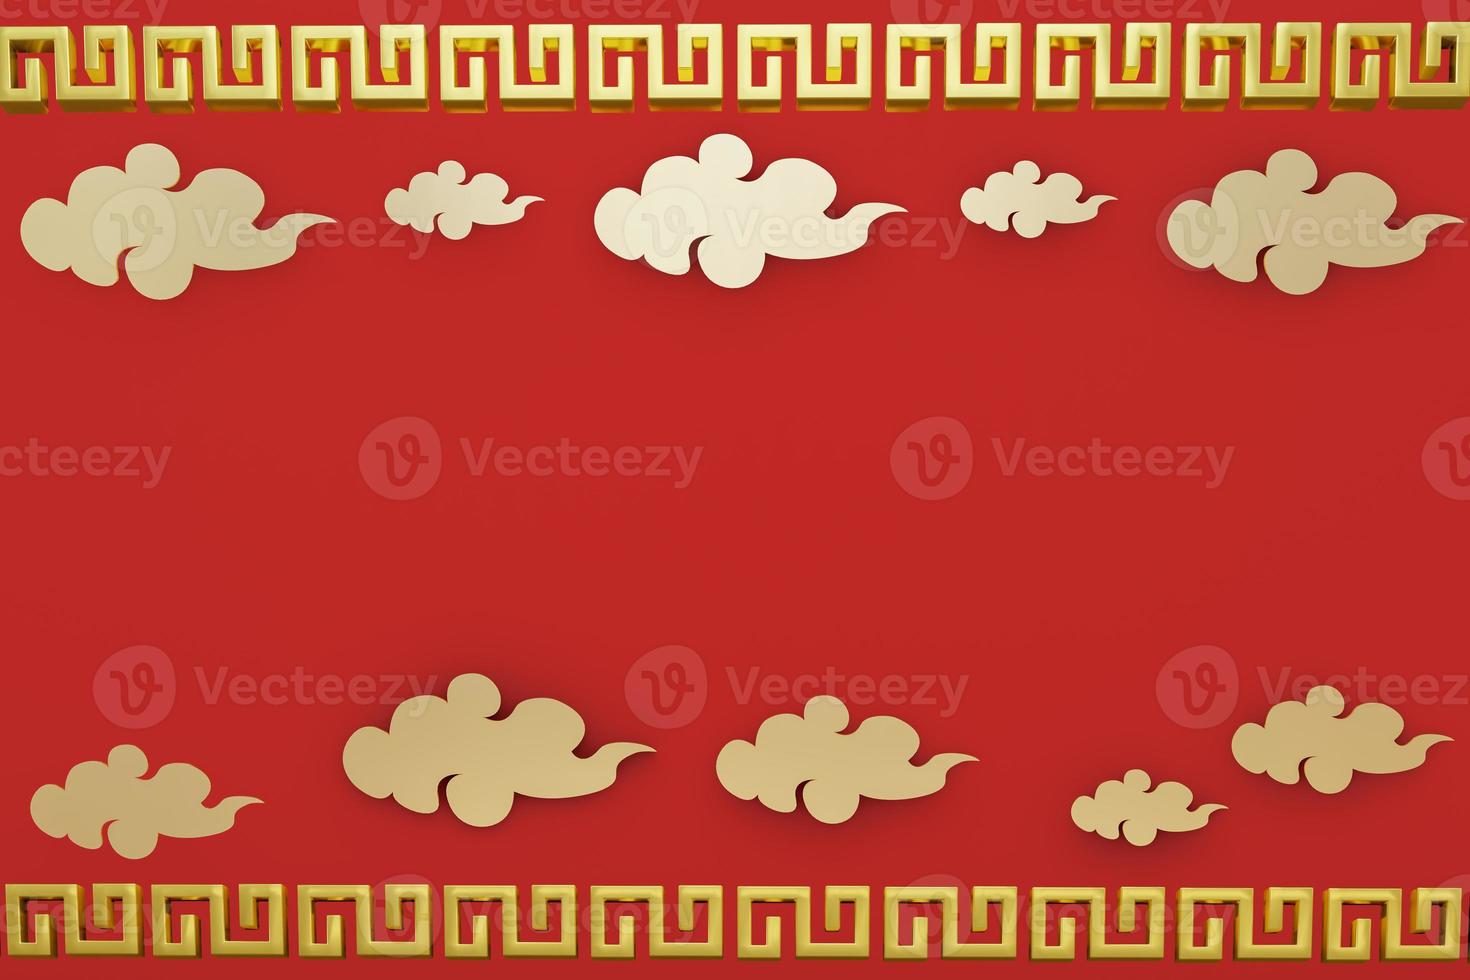 tarjeta de felicitación de año nuevo chino. año de la rata. adorno dorado y rojo. diseño de estilo 3d. concepto de plantilla de banner de vacaciones, elemento de decoración foto